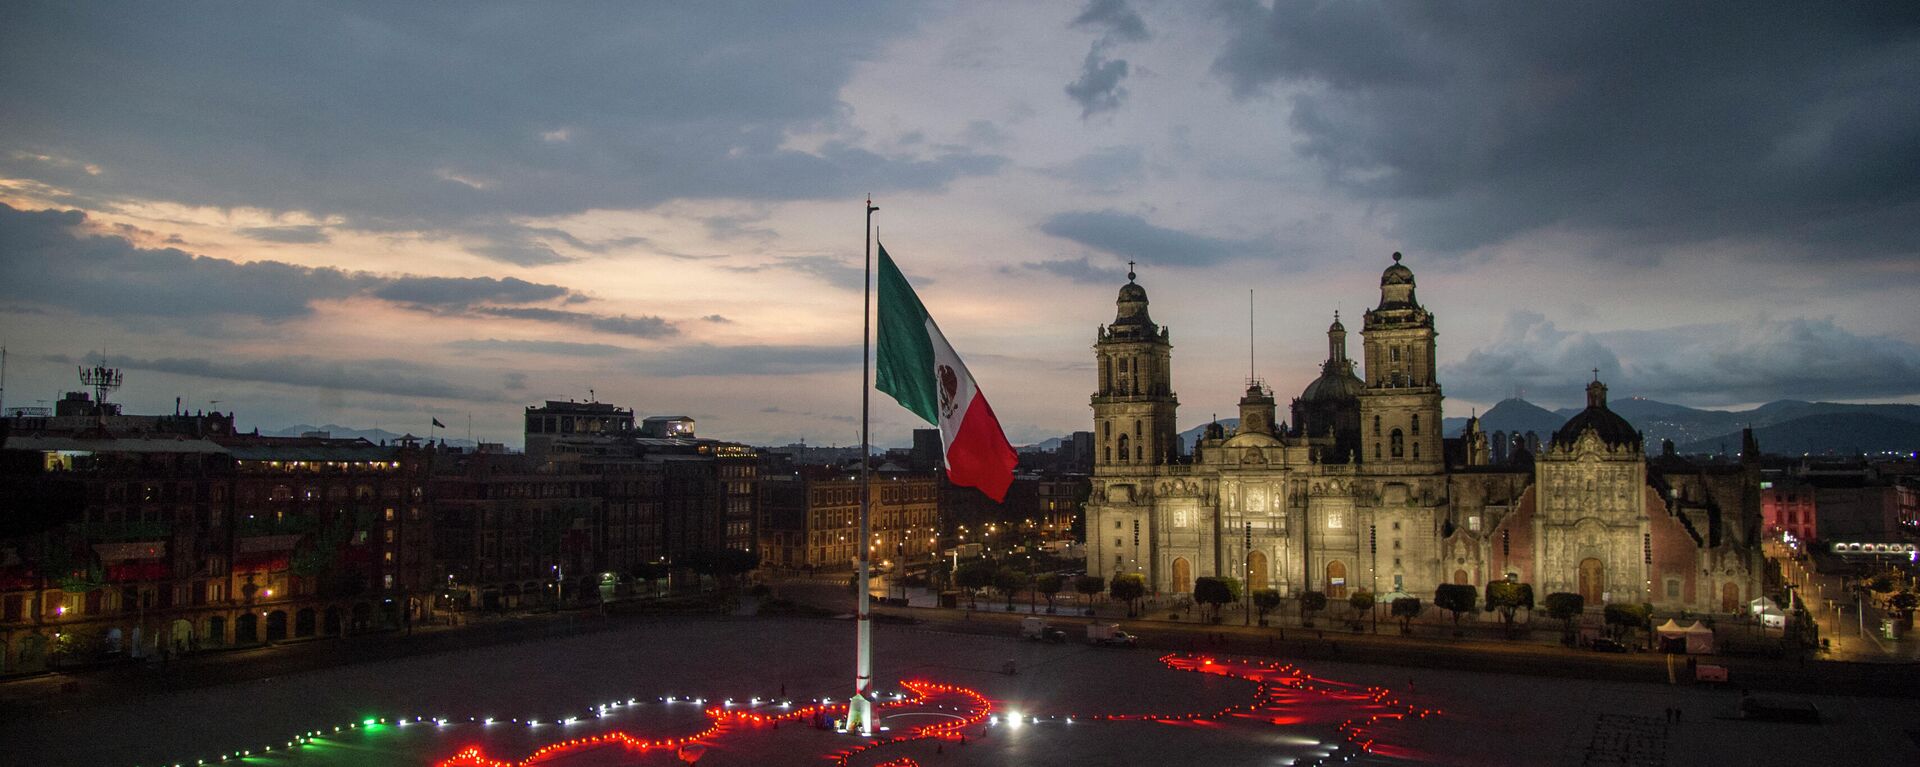 La bandera de México en el Zócalo capitalino durante la celebración del Día de lndependencia - Sputnik Mundo, 1920, 22.12.2021